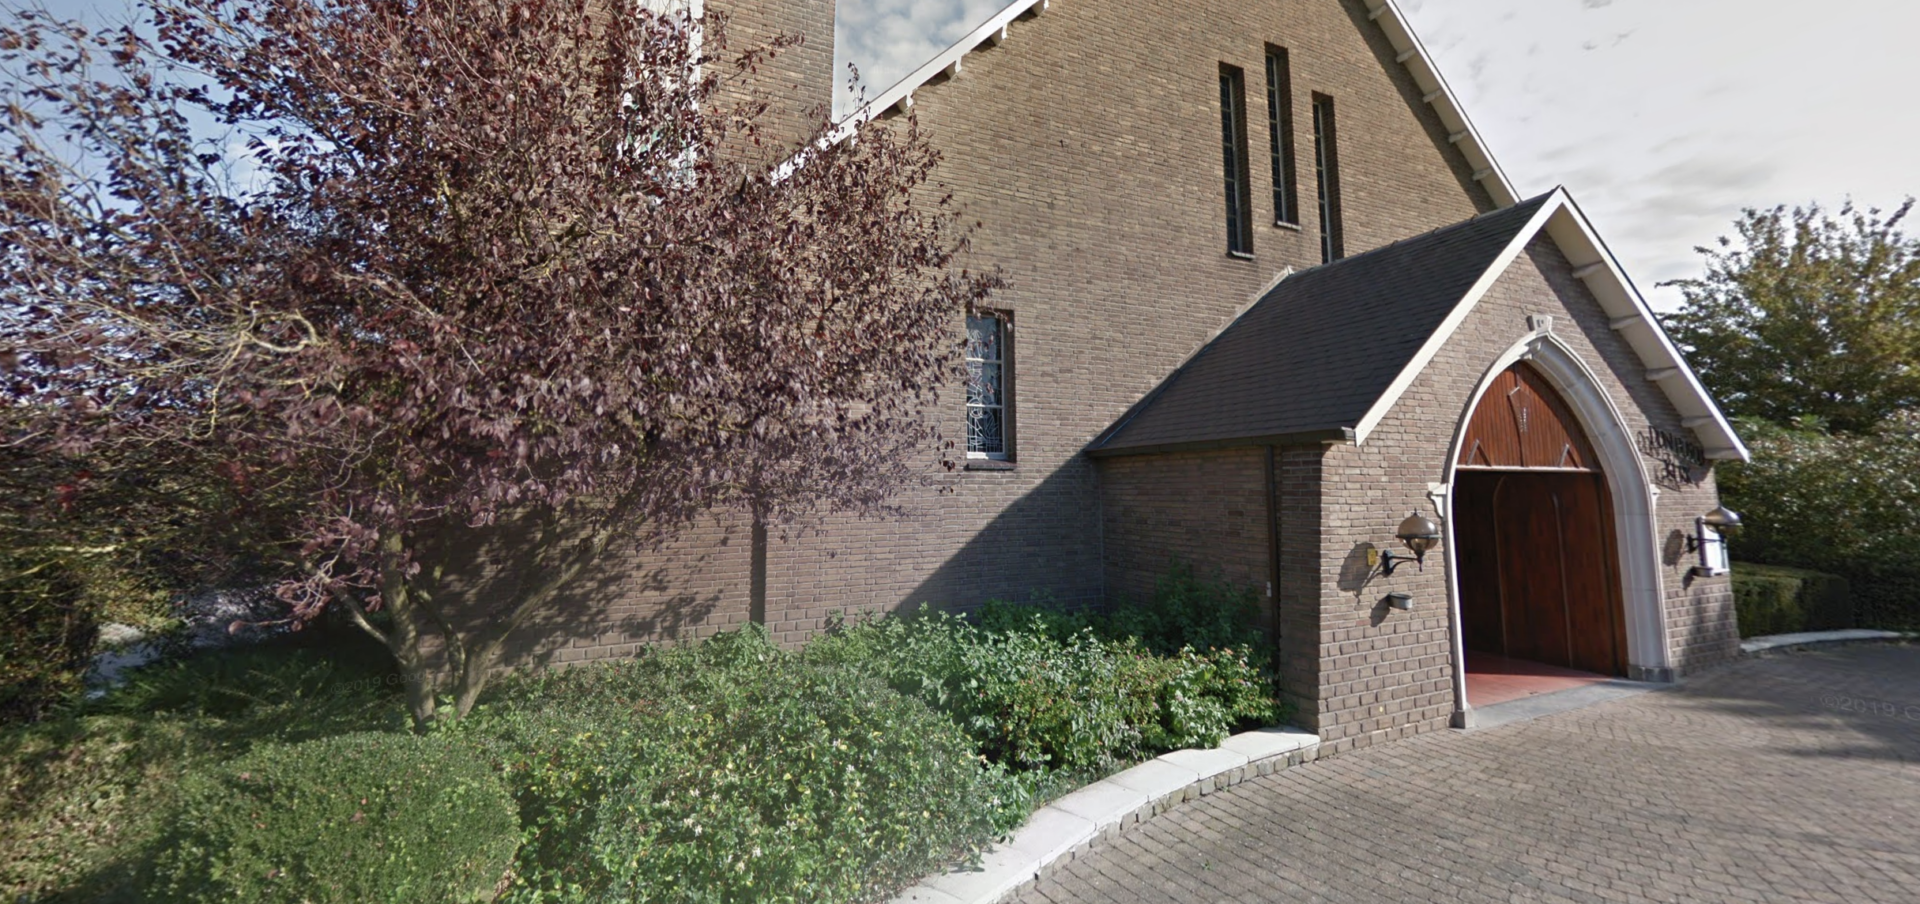 L'entrée de l'église Don-Bosco, à Hal (Belgique) | capture d'écran Google Maps